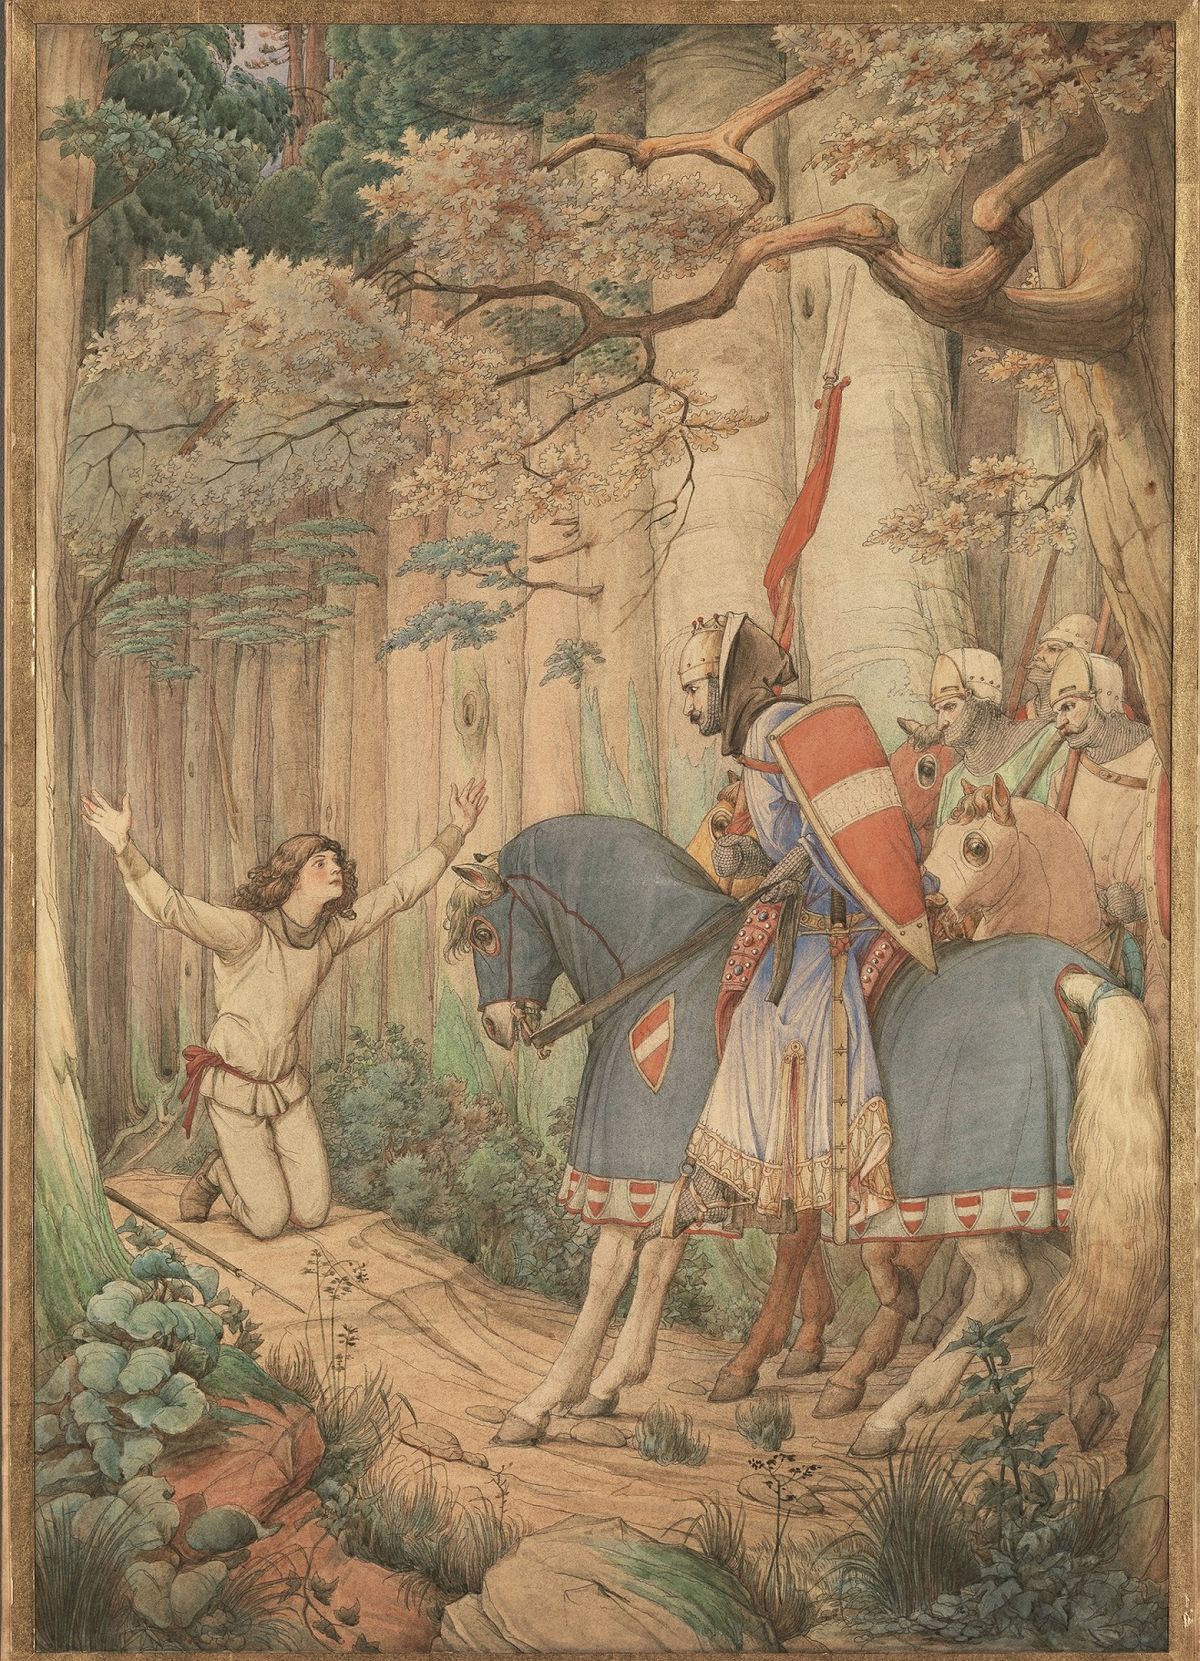 Edward von Steinle, Parsifal’s Meeting with the Knights in the Forest (1884) © Bayerische Staatsgemäldesammlungen, Neue Pinakothek, Munich. Photo: Bayerische Staatsgemäldesammlungen